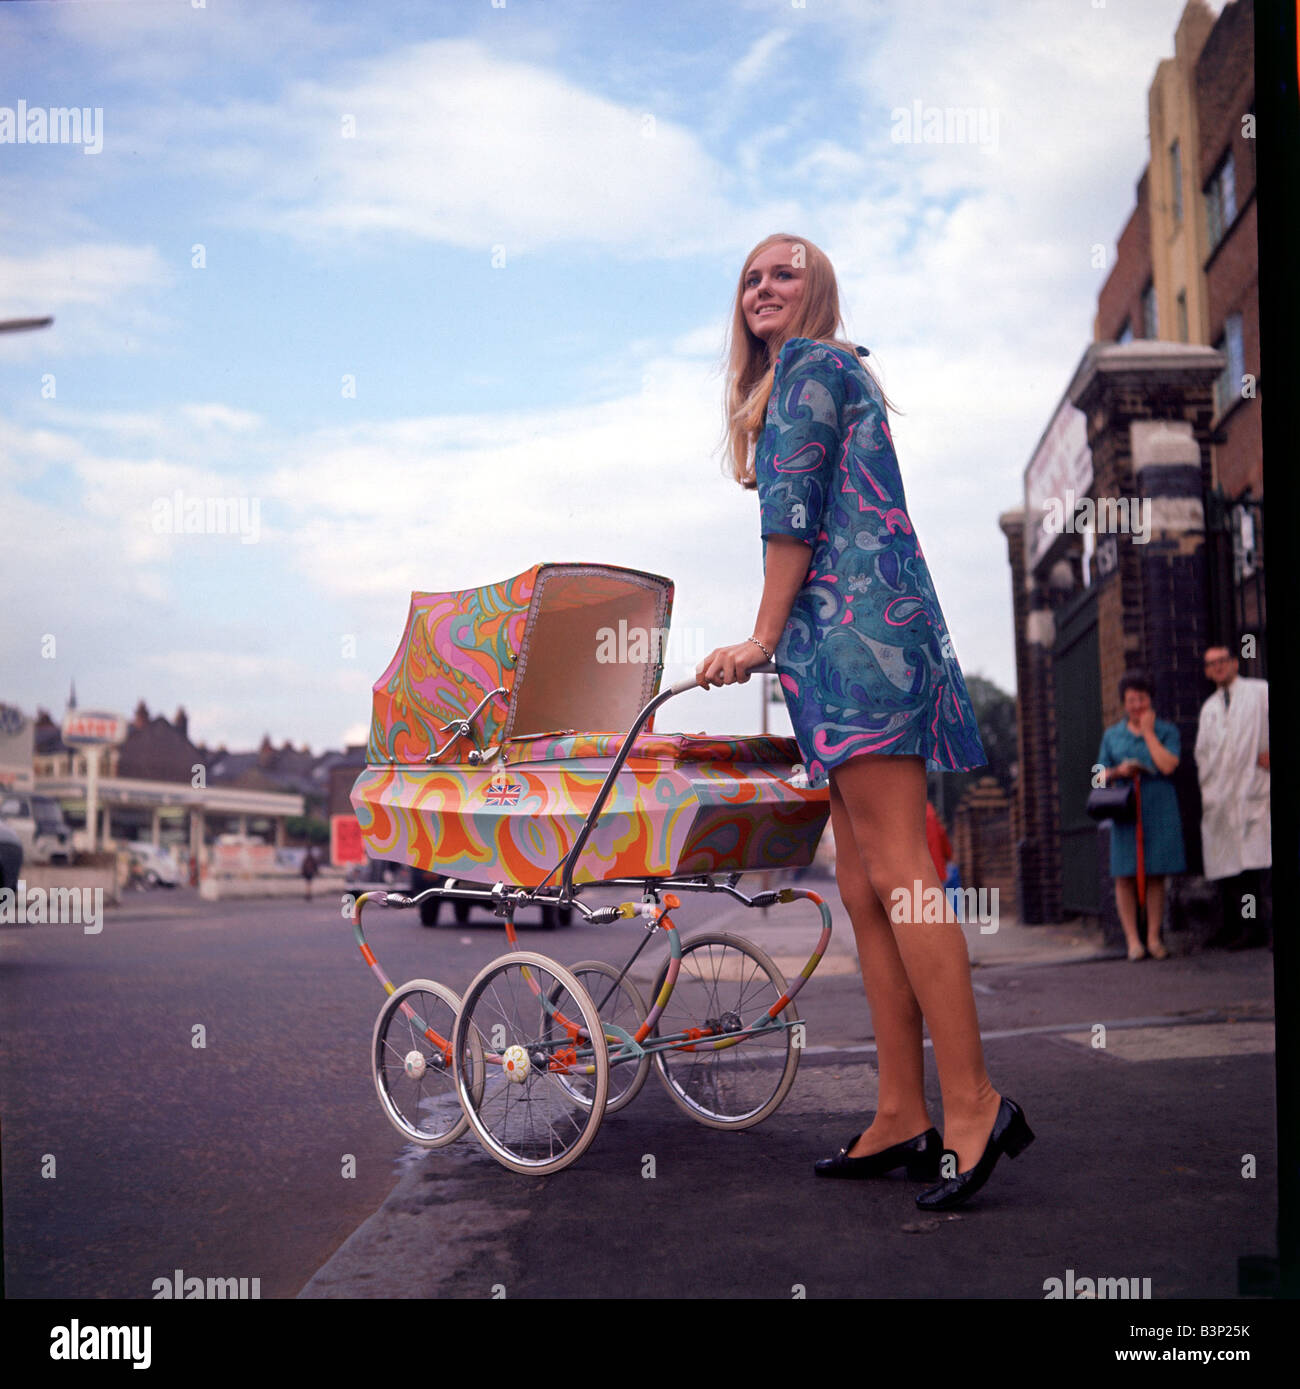 1960s baby stroller